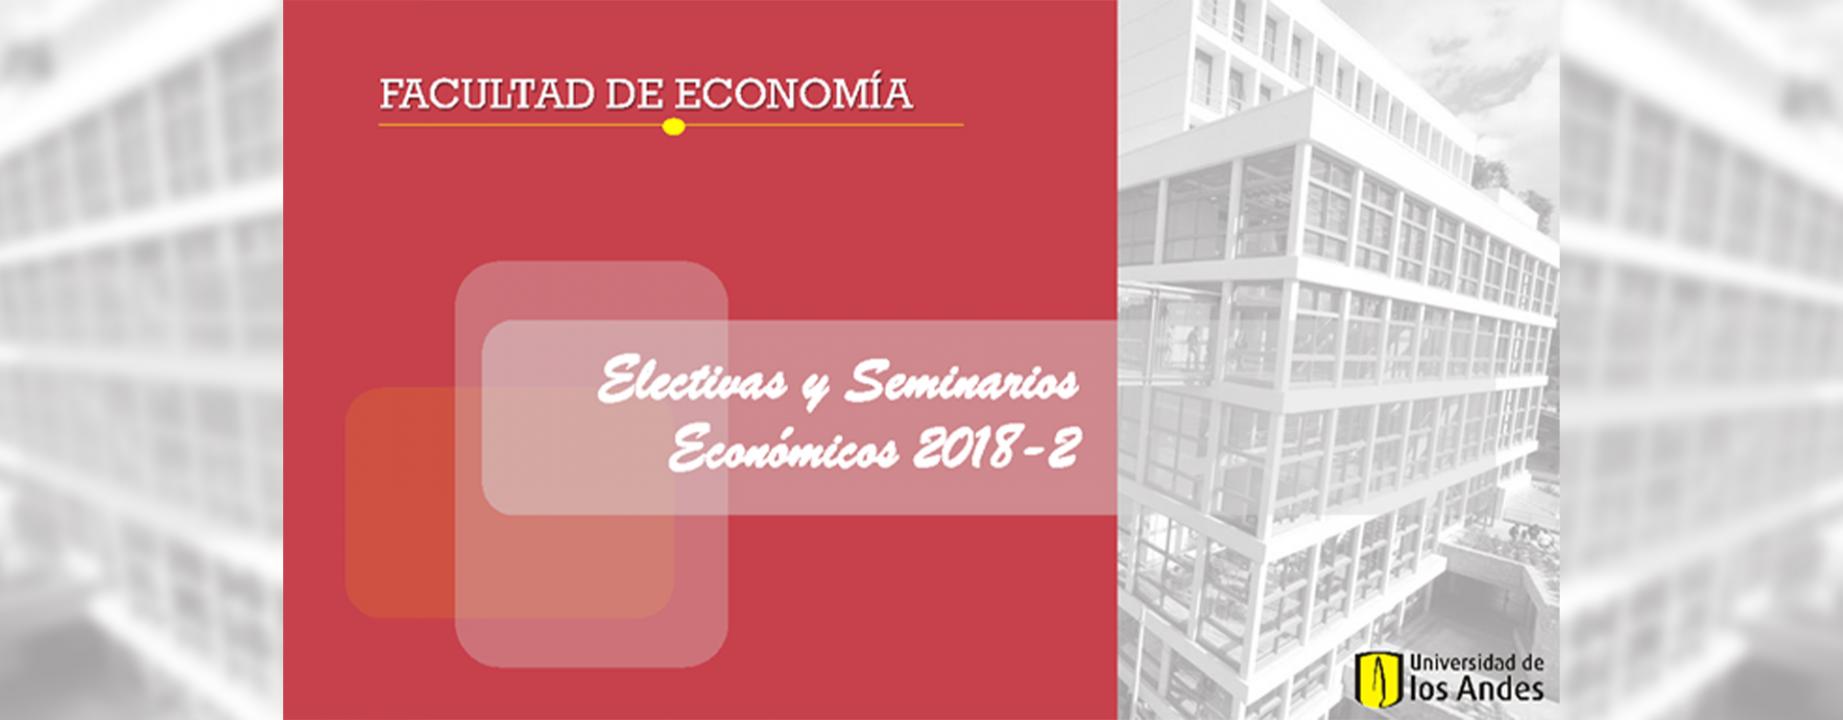 electiva, seminario, facultad de economía